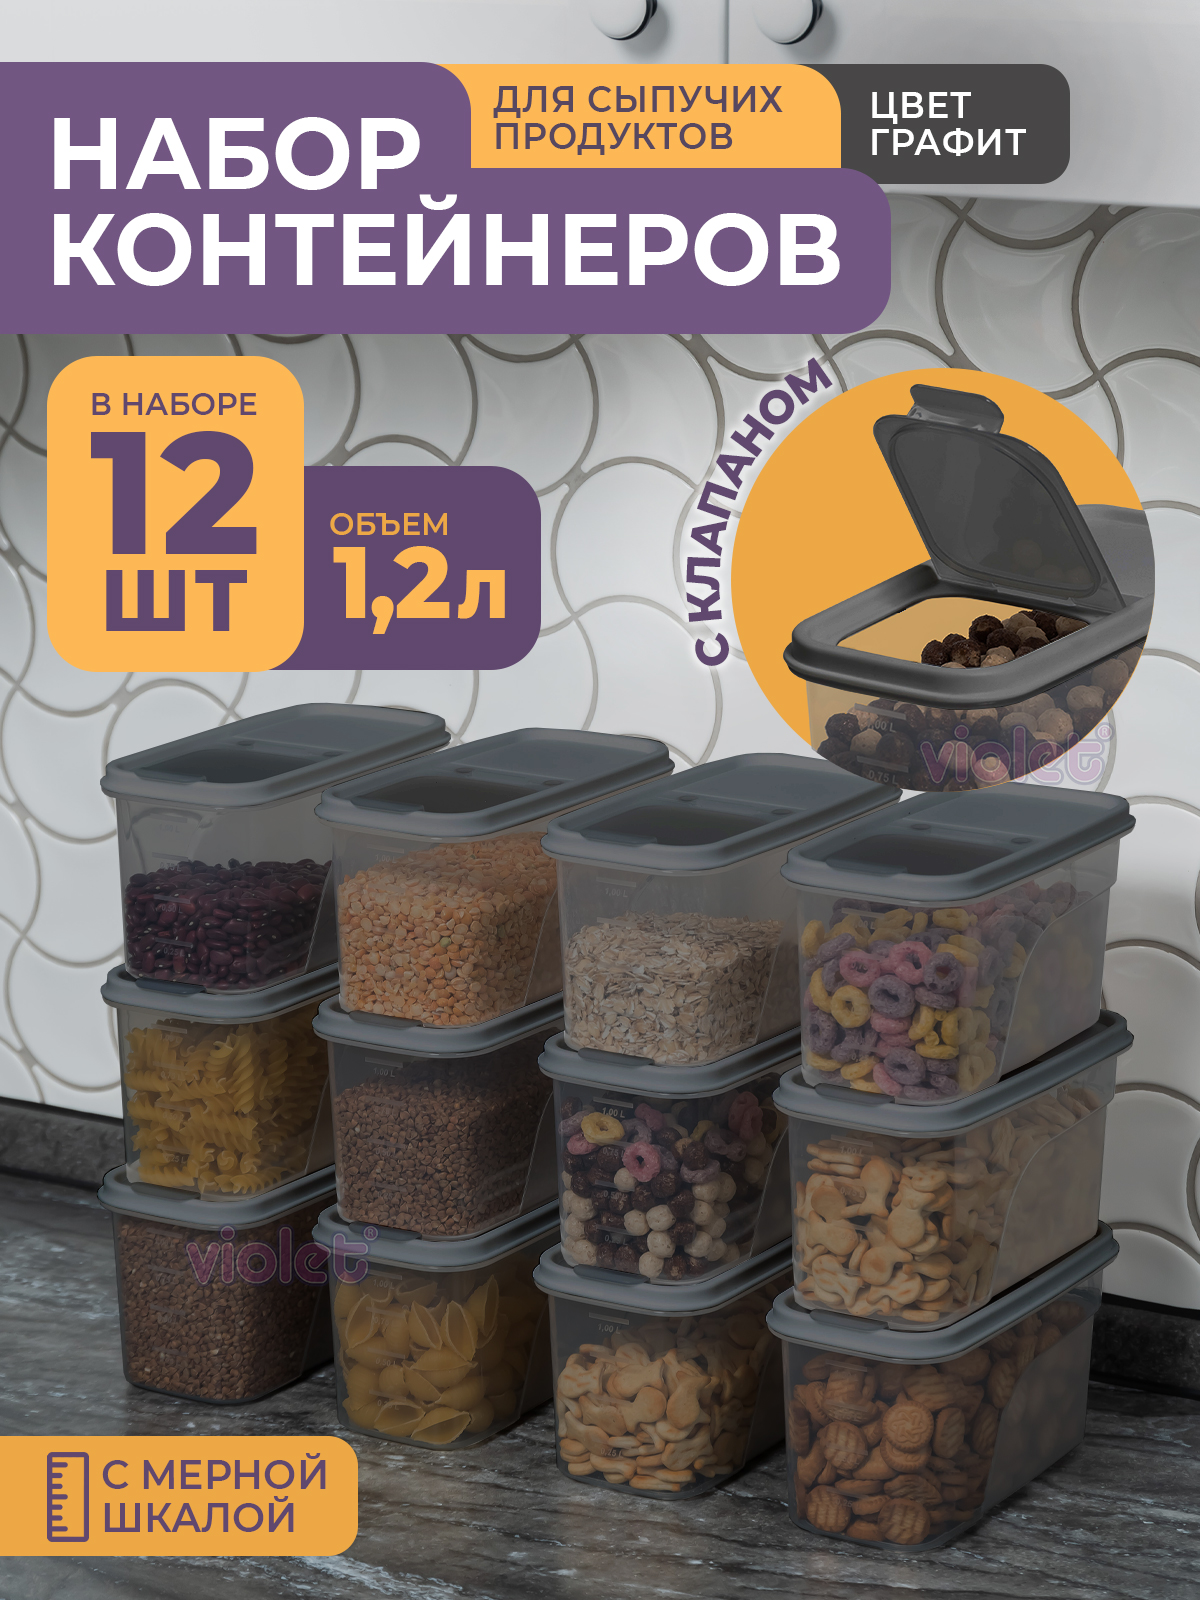 Набор контейнеров Violet для сыпучих продуктов 1,2л, набор 12шт, цвет графит